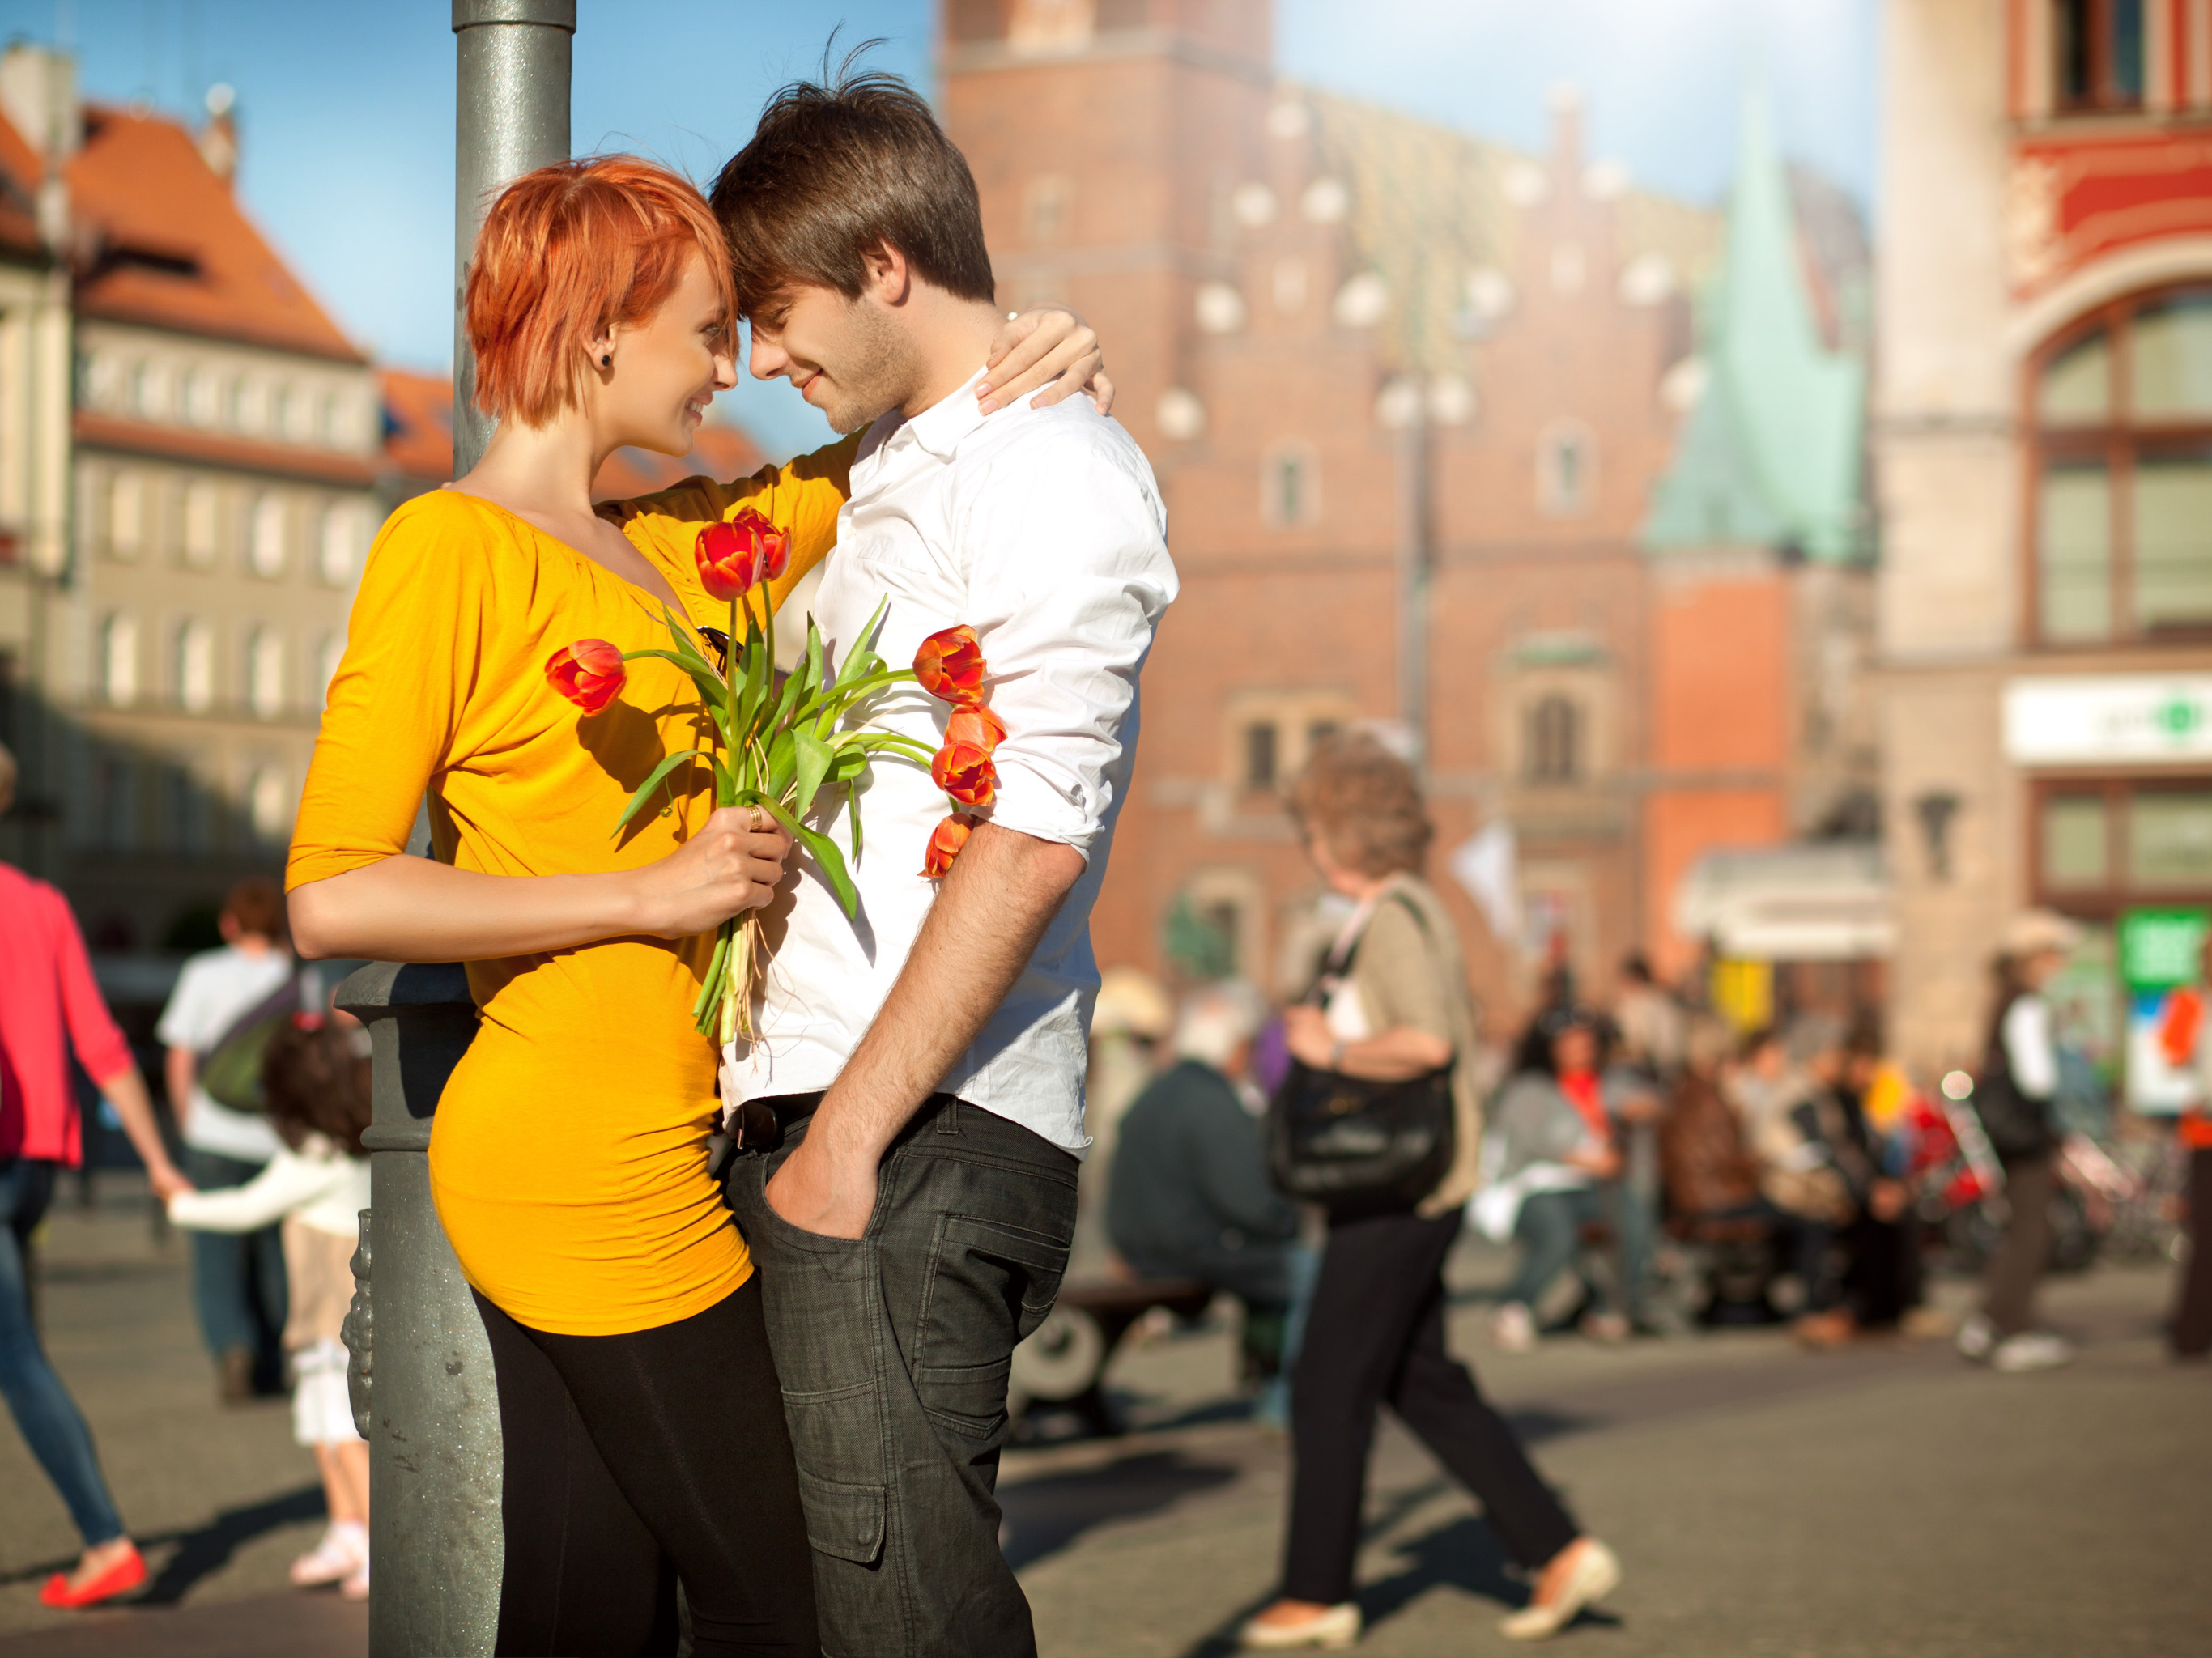 Апрель город любовь. Парень с цветами на улице. Фотосессия пары в городе. Влюбленные на улице. Парочка влюбленных на улице.